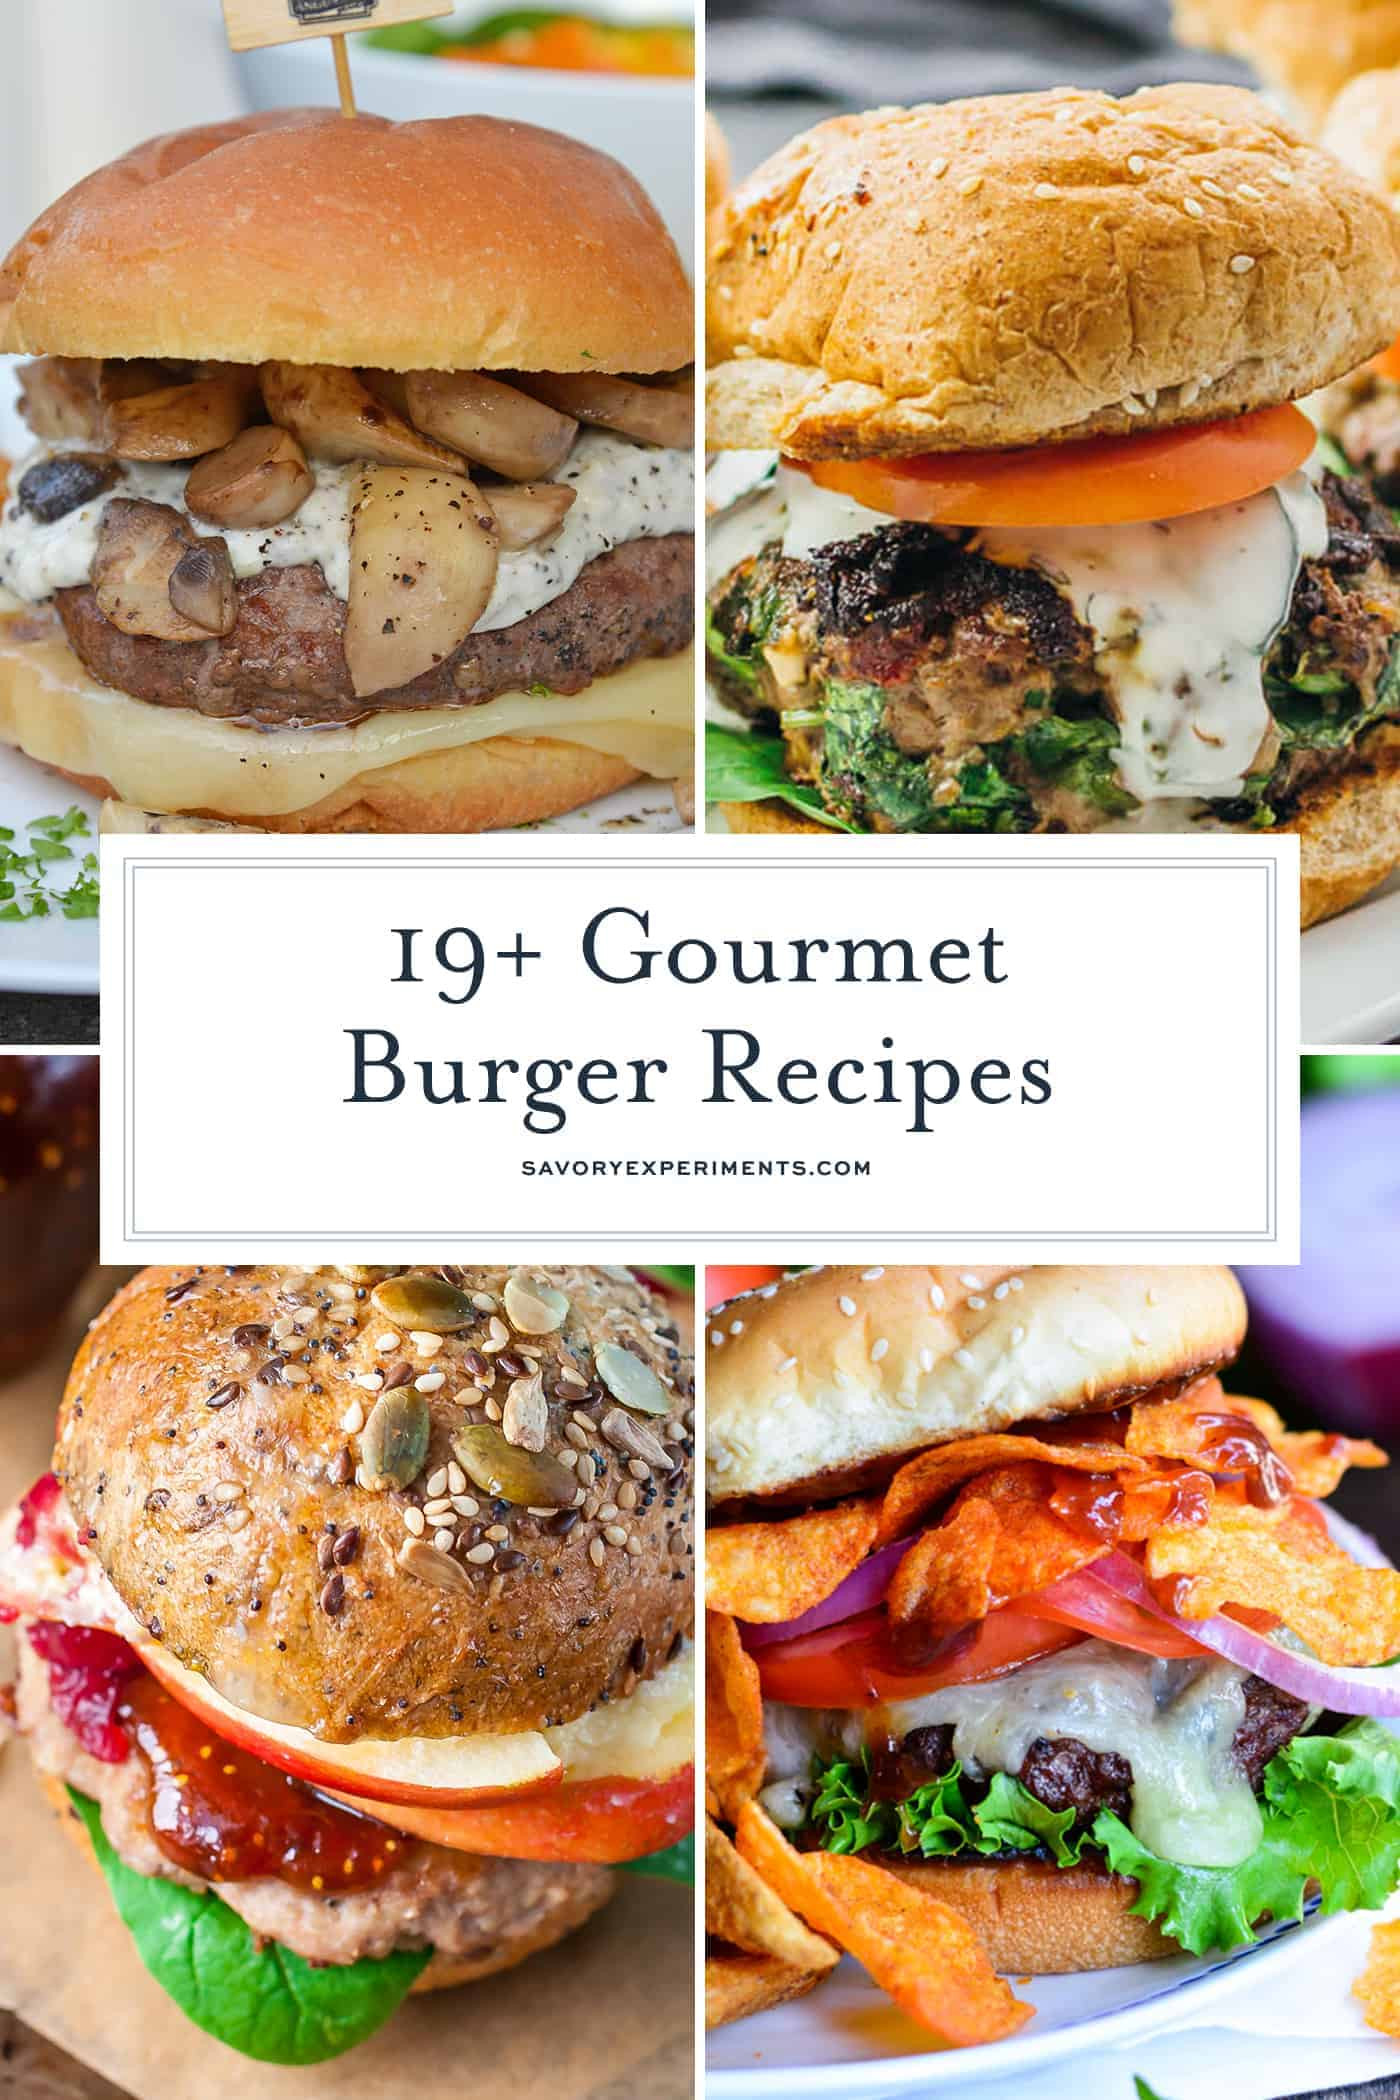 Hamburgers By Gourmet
 The 19 Best Gourmet Burger Recipes Gourmet Hamburgers